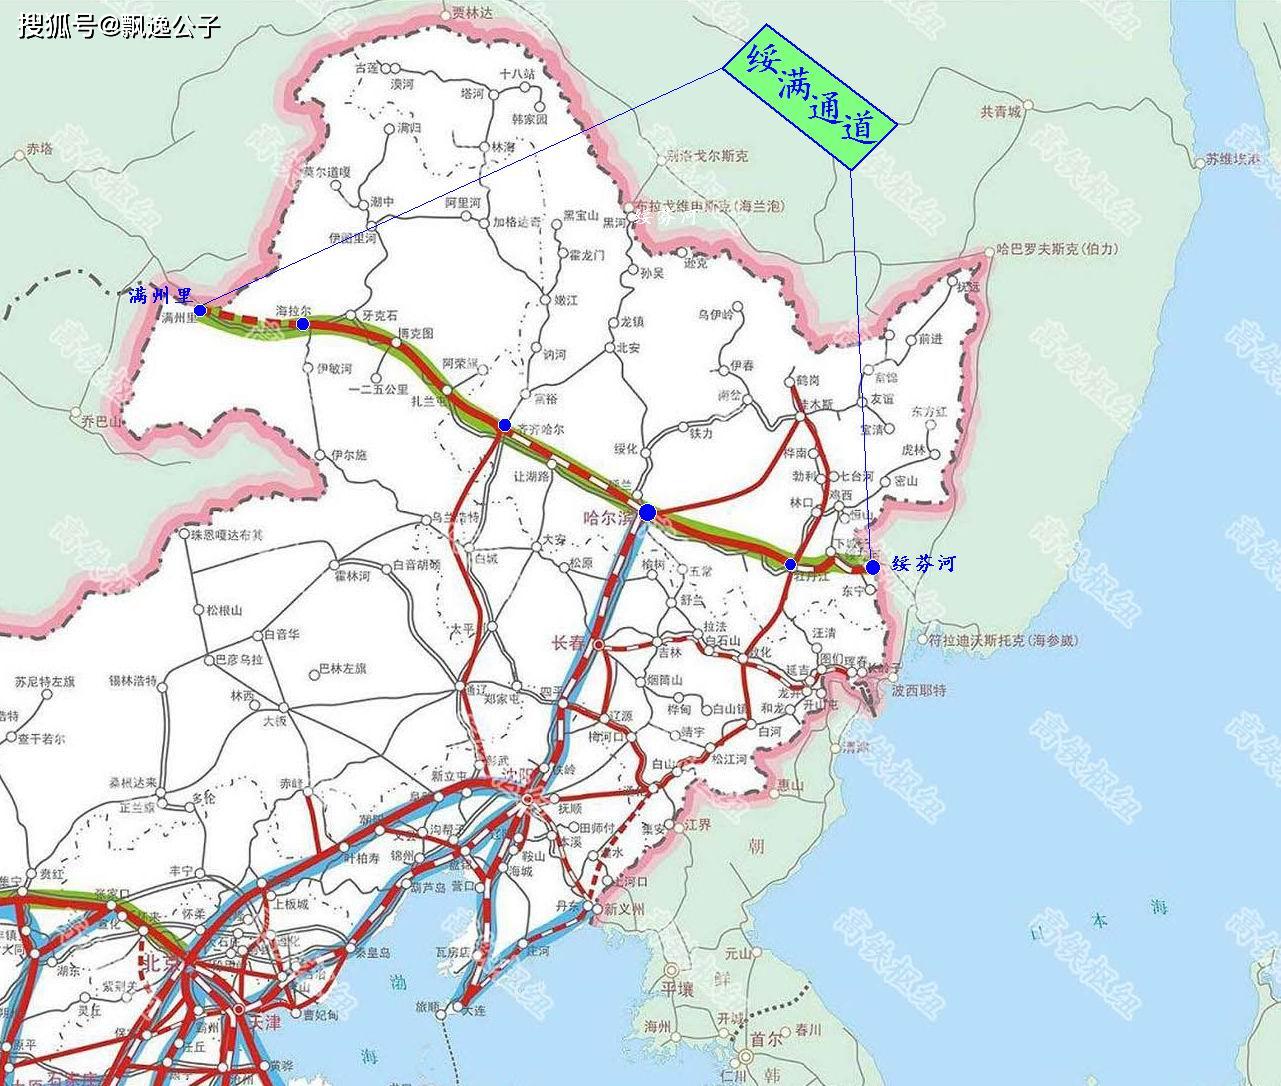 沿海高铁是我国规划建设的高铁大通道,北起辽宁,南至广西